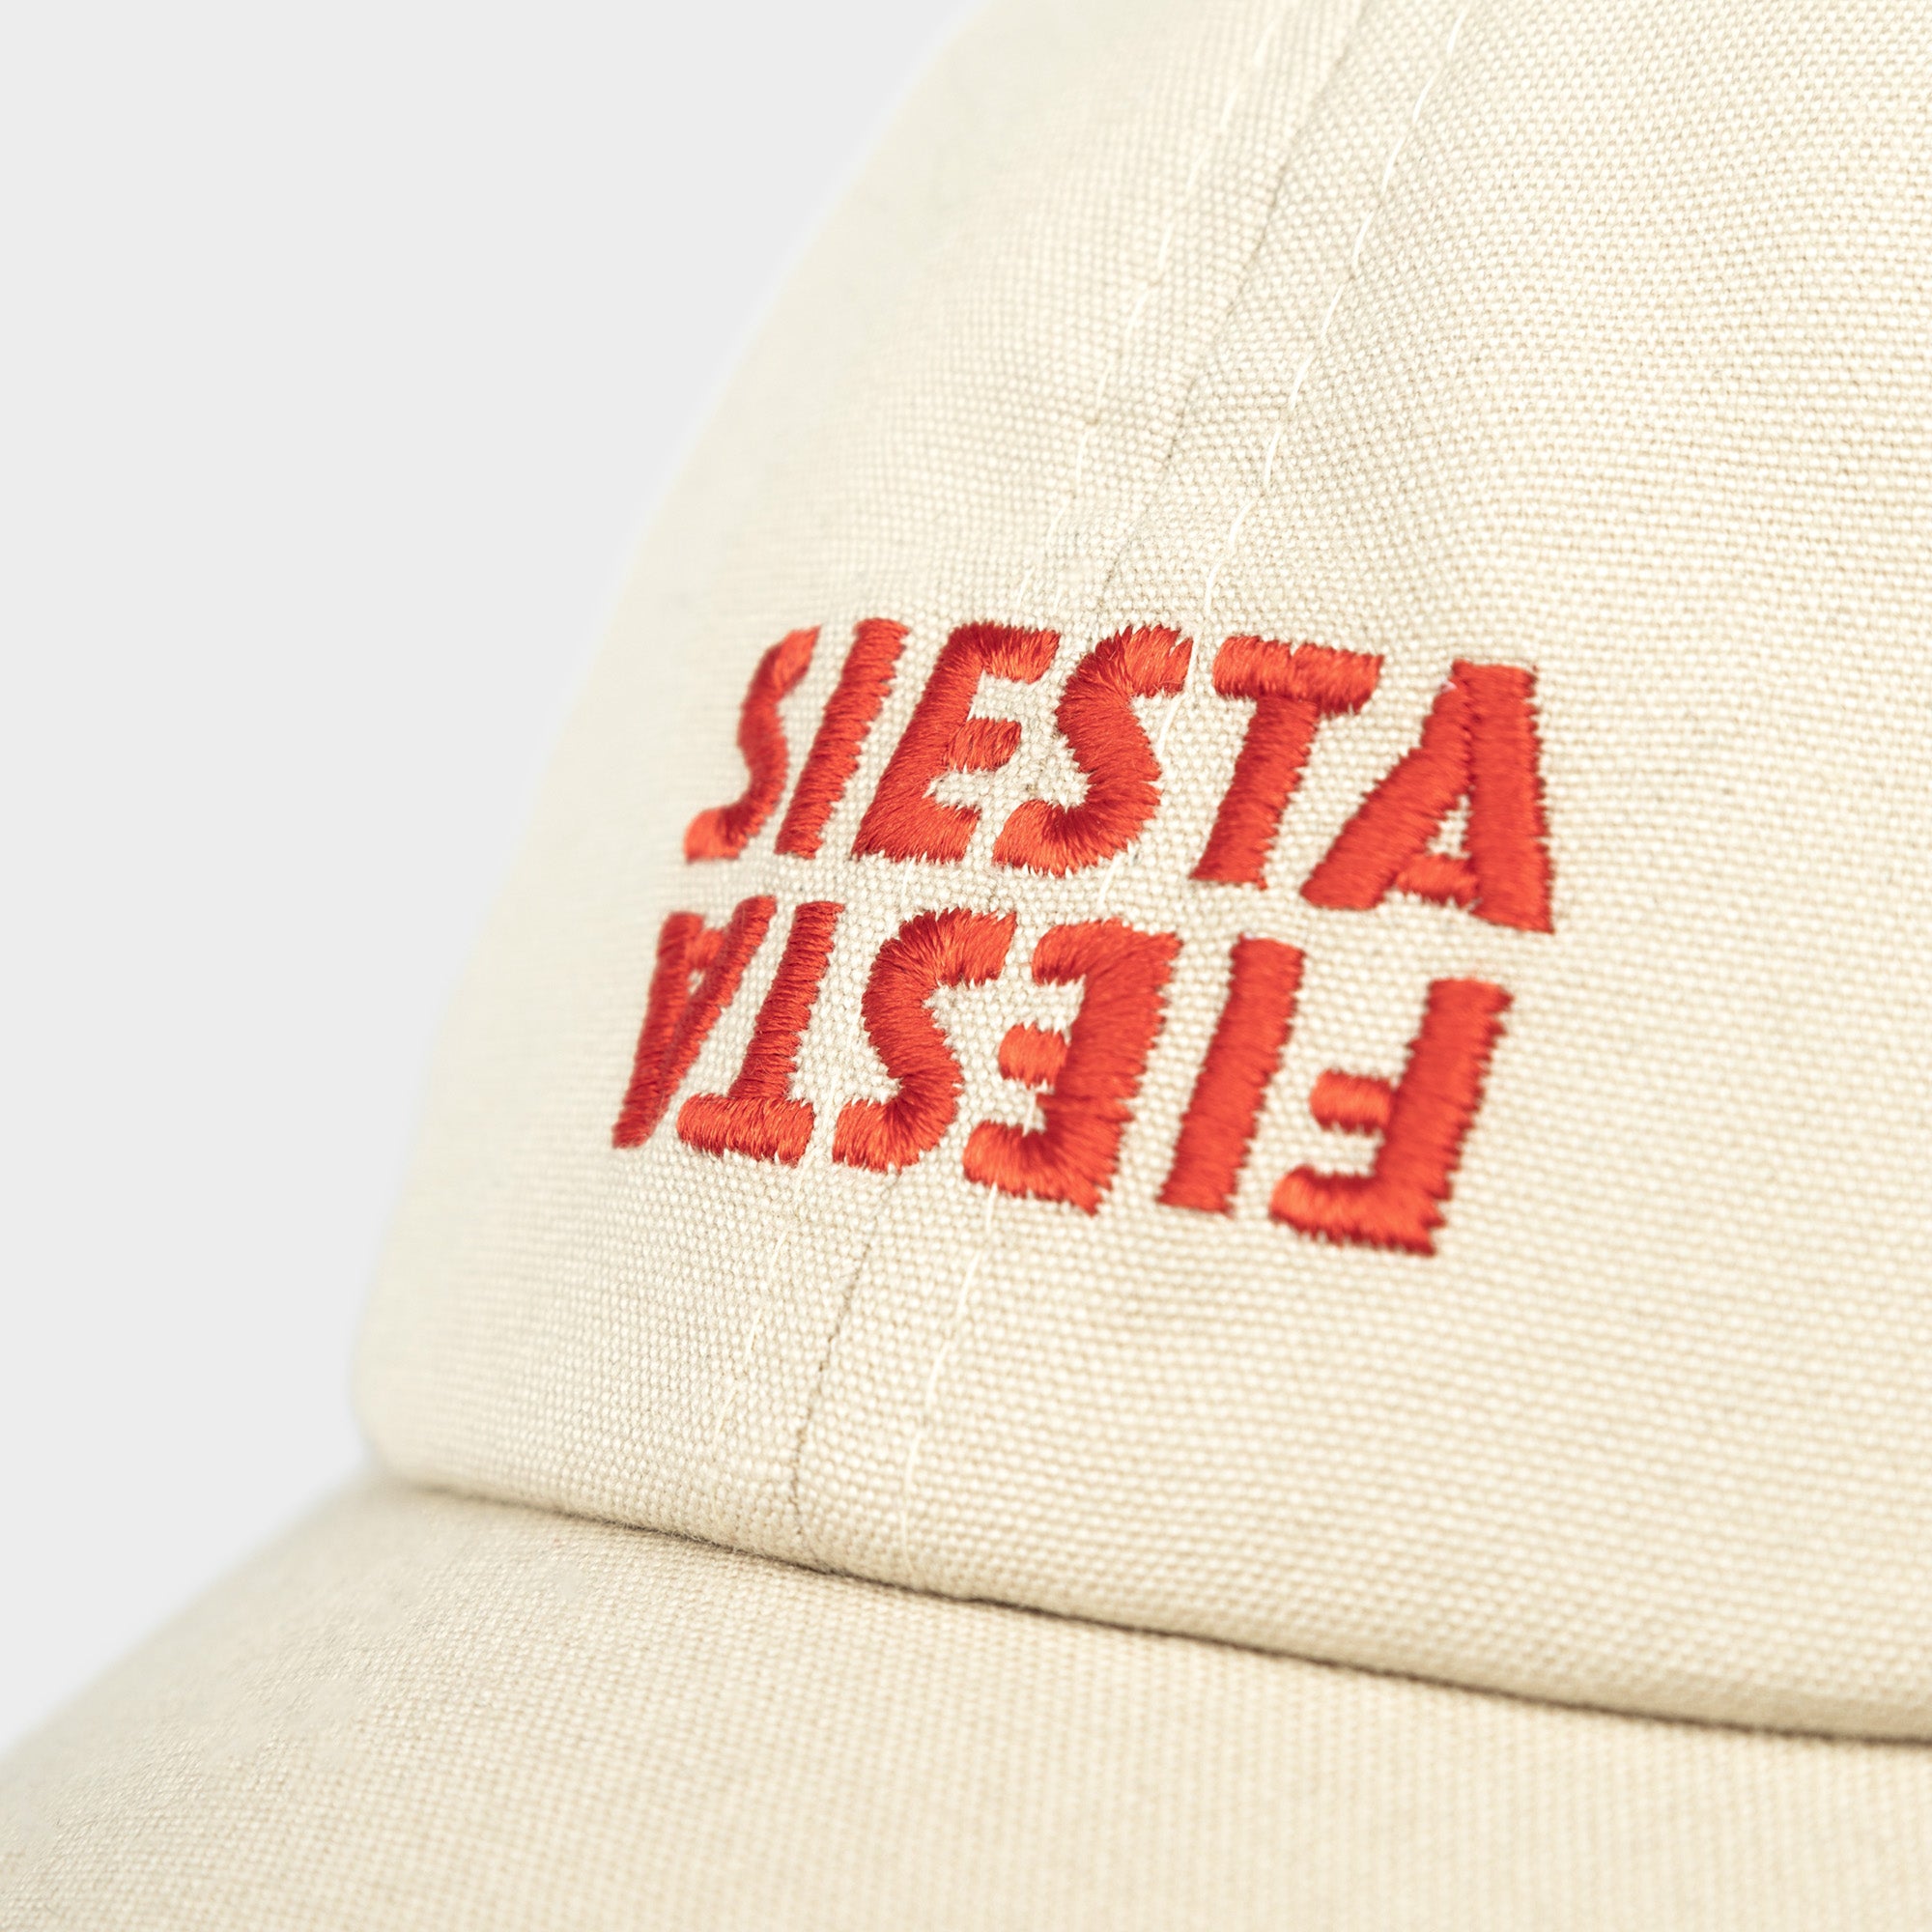 Soft Cap Slussen Siesta Fiesta